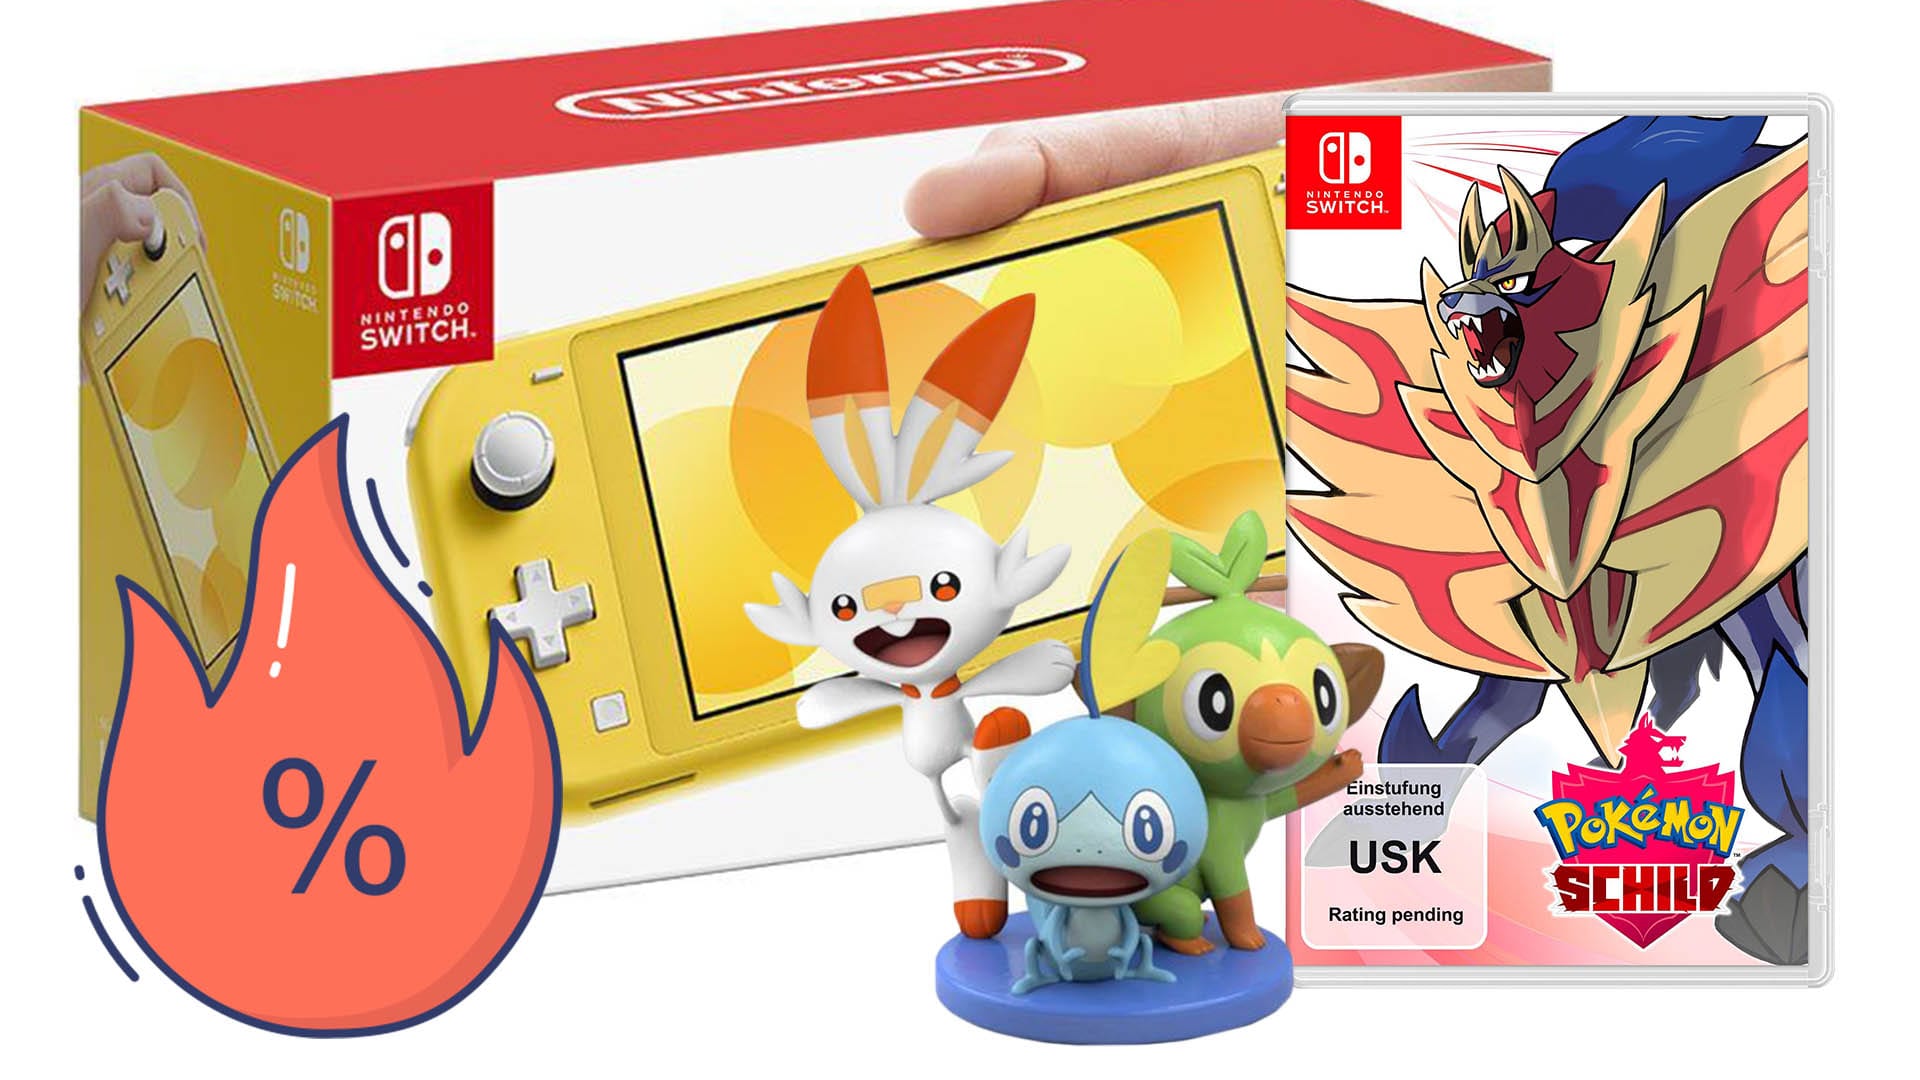 Nintendo Switch Lite und Pokémon für Schild Otto! jetzt Euro, sparen bei günstige 229